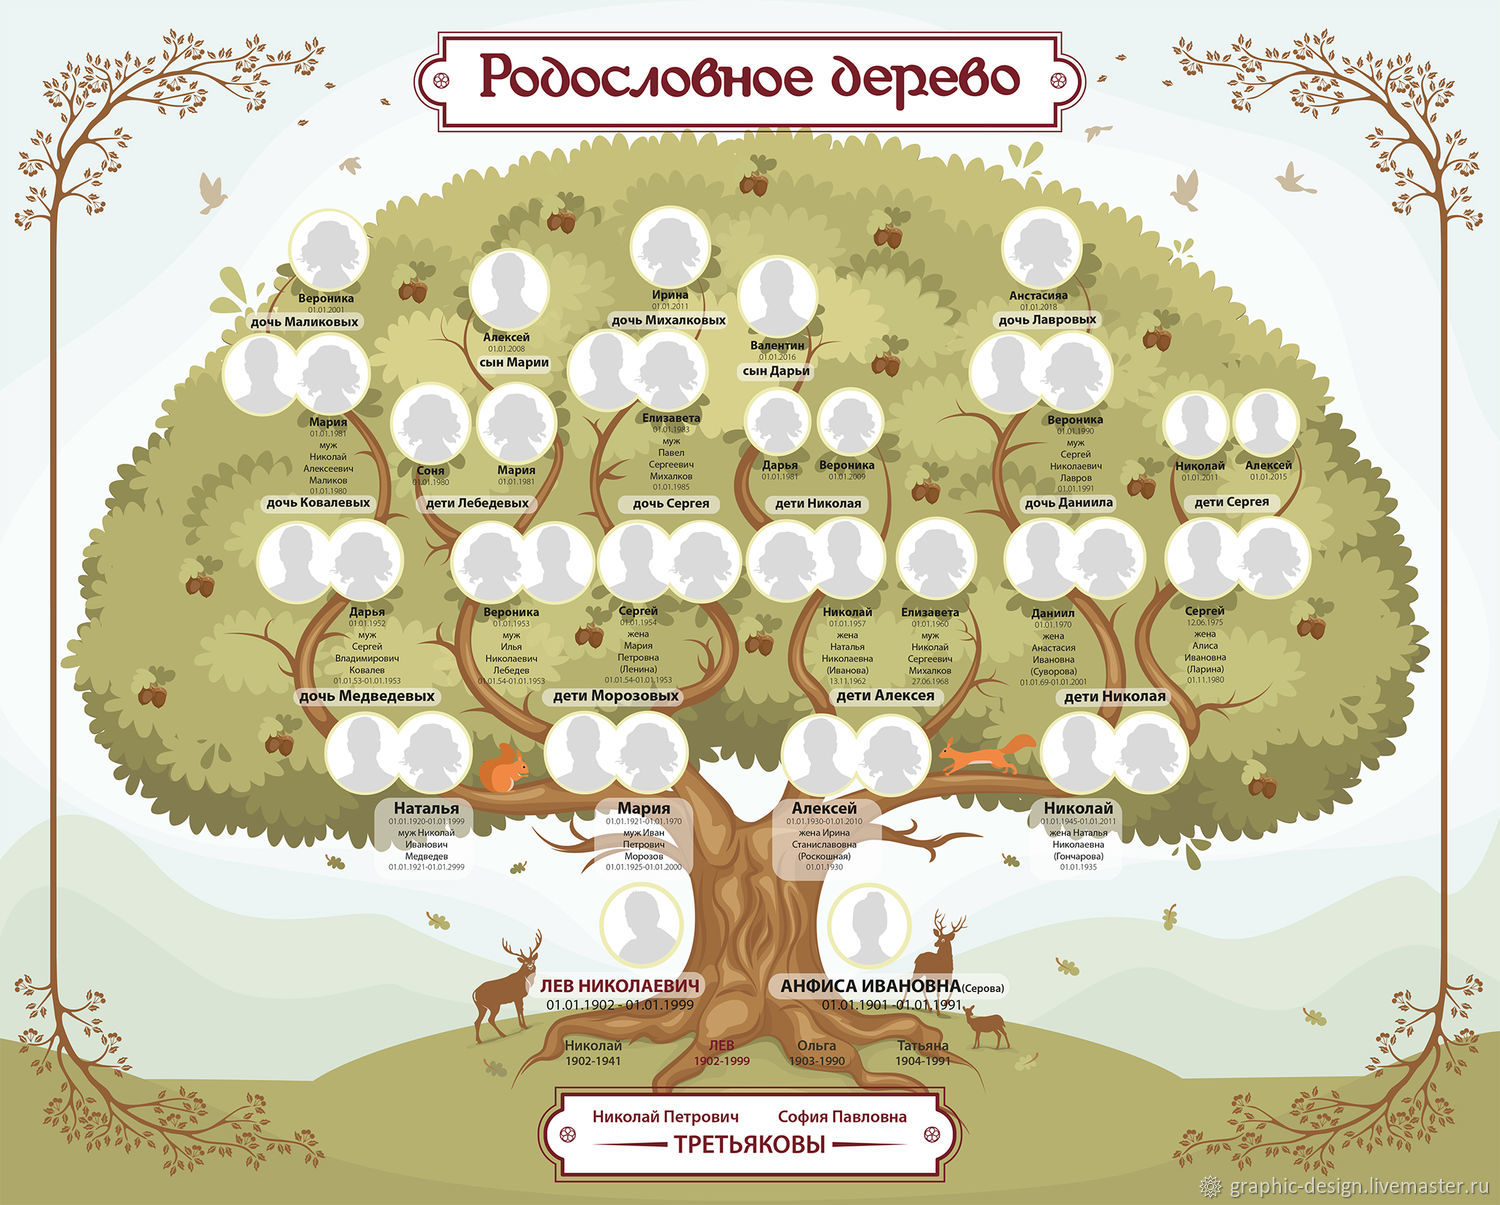 Иерархическая модель генеалогического дерева семьи